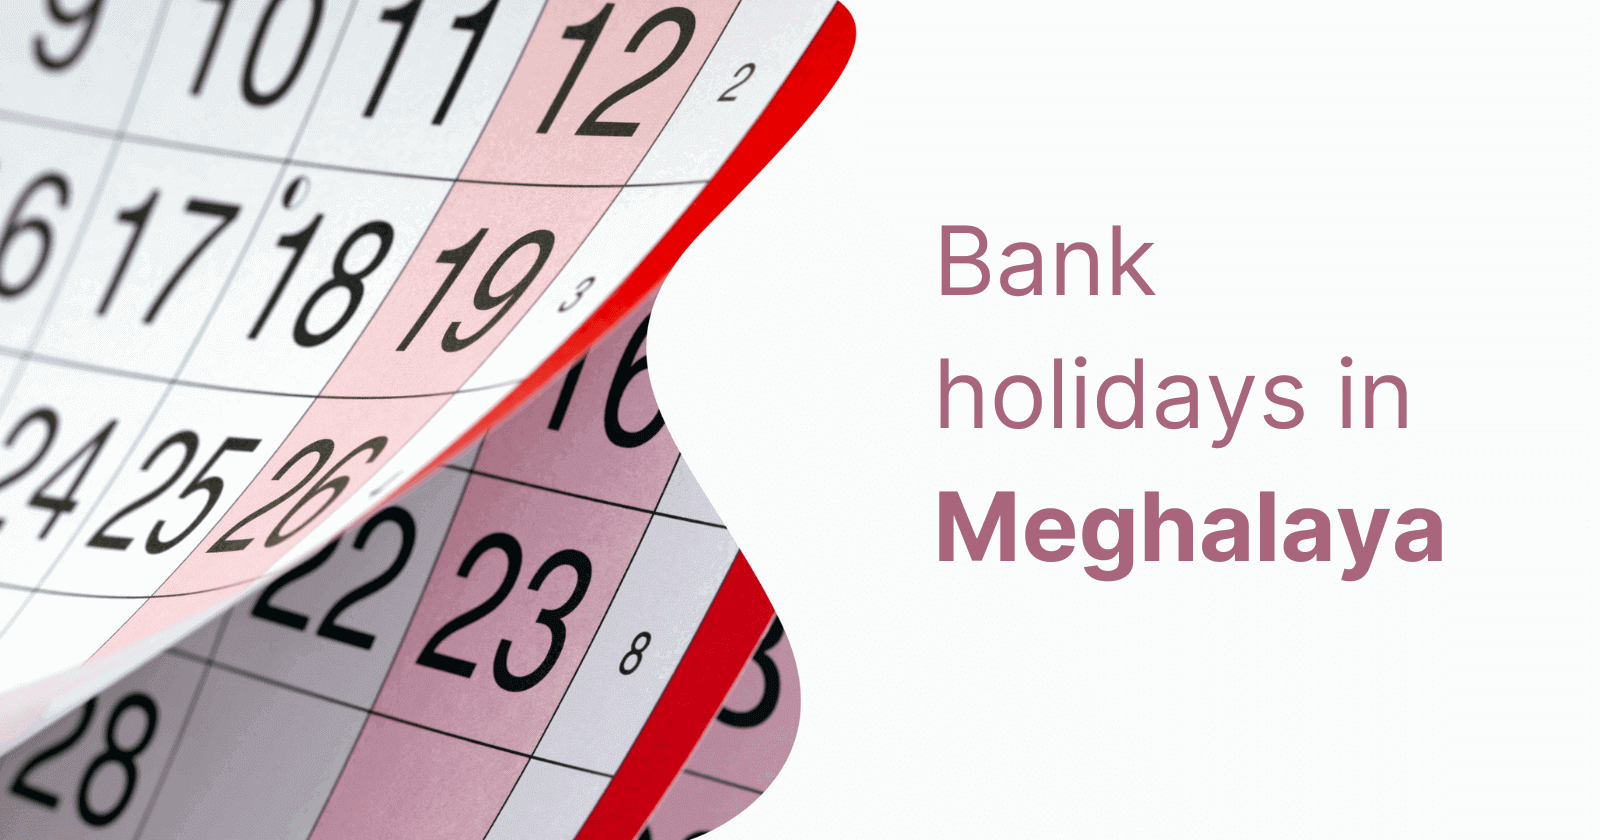 Meghalaya Holidays: List of Bank Holidays in Meghalaya in 2023